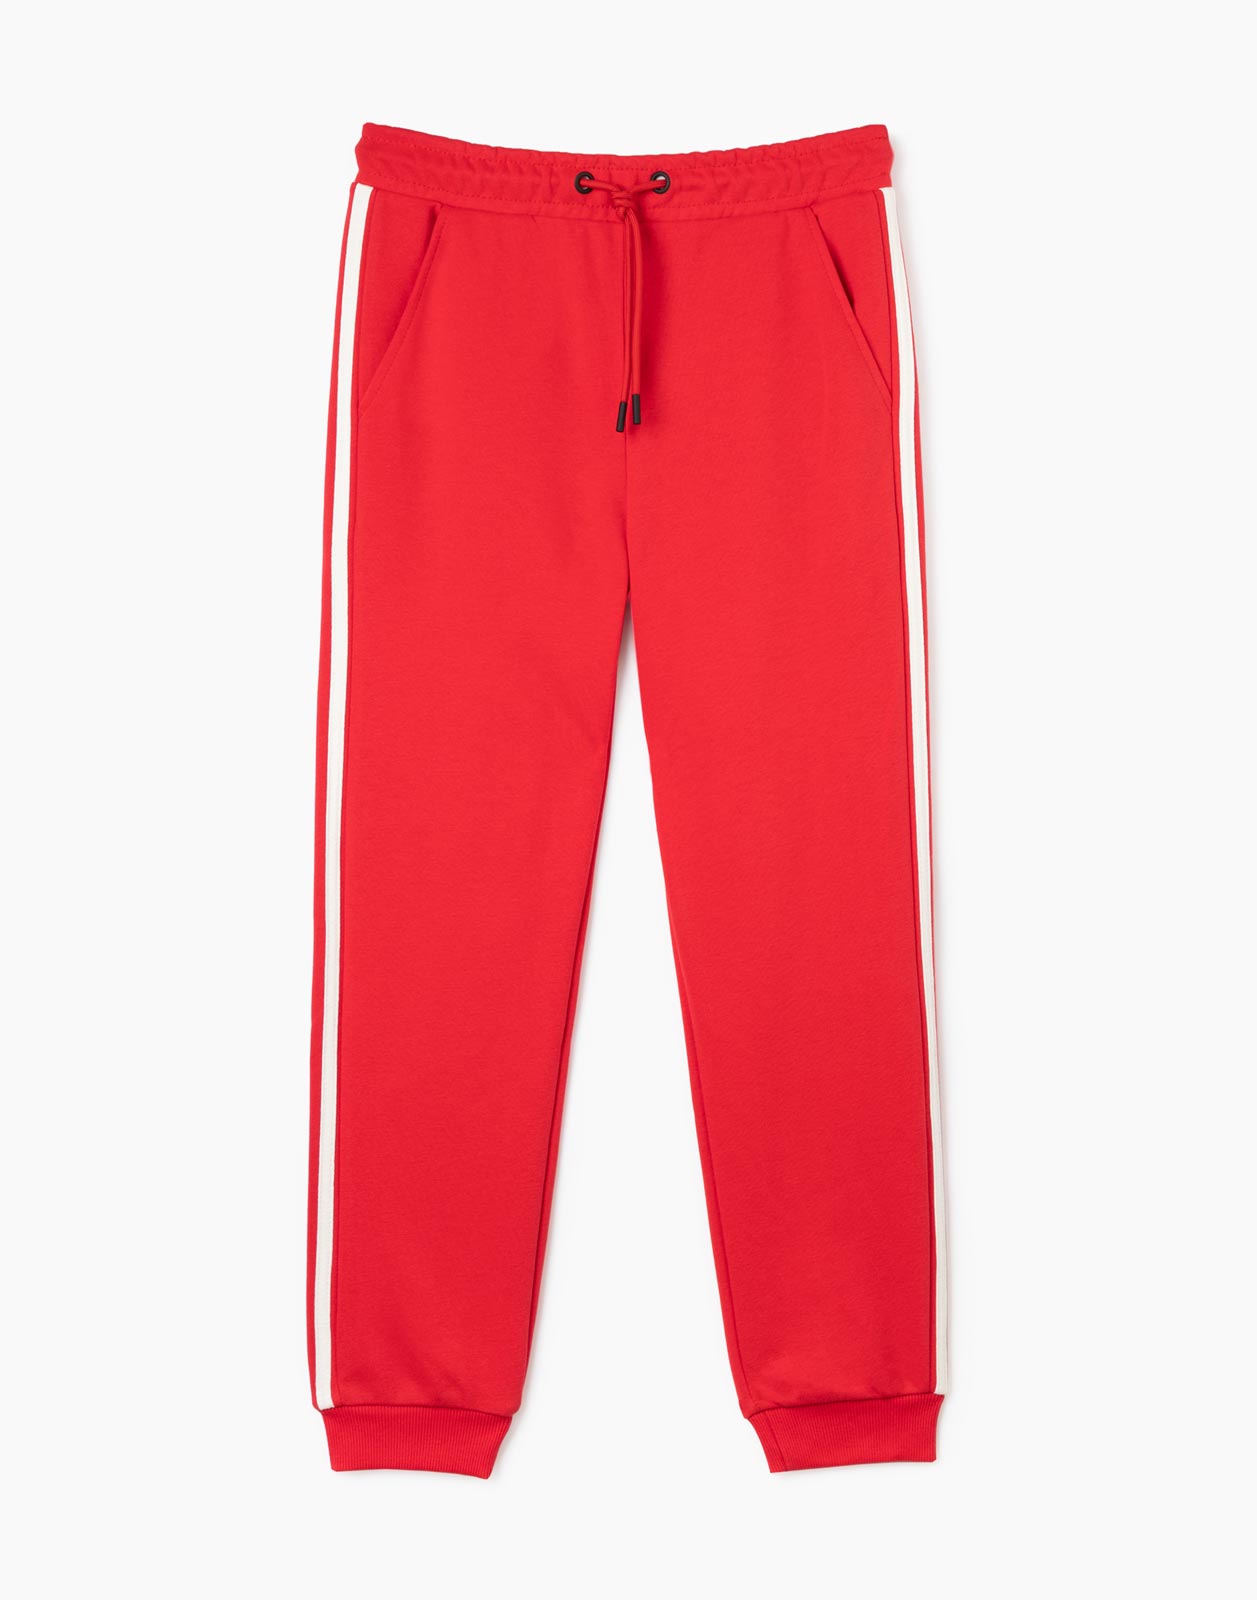 Красные спортивные брюки Jogger с лампасами для мальчика р.128